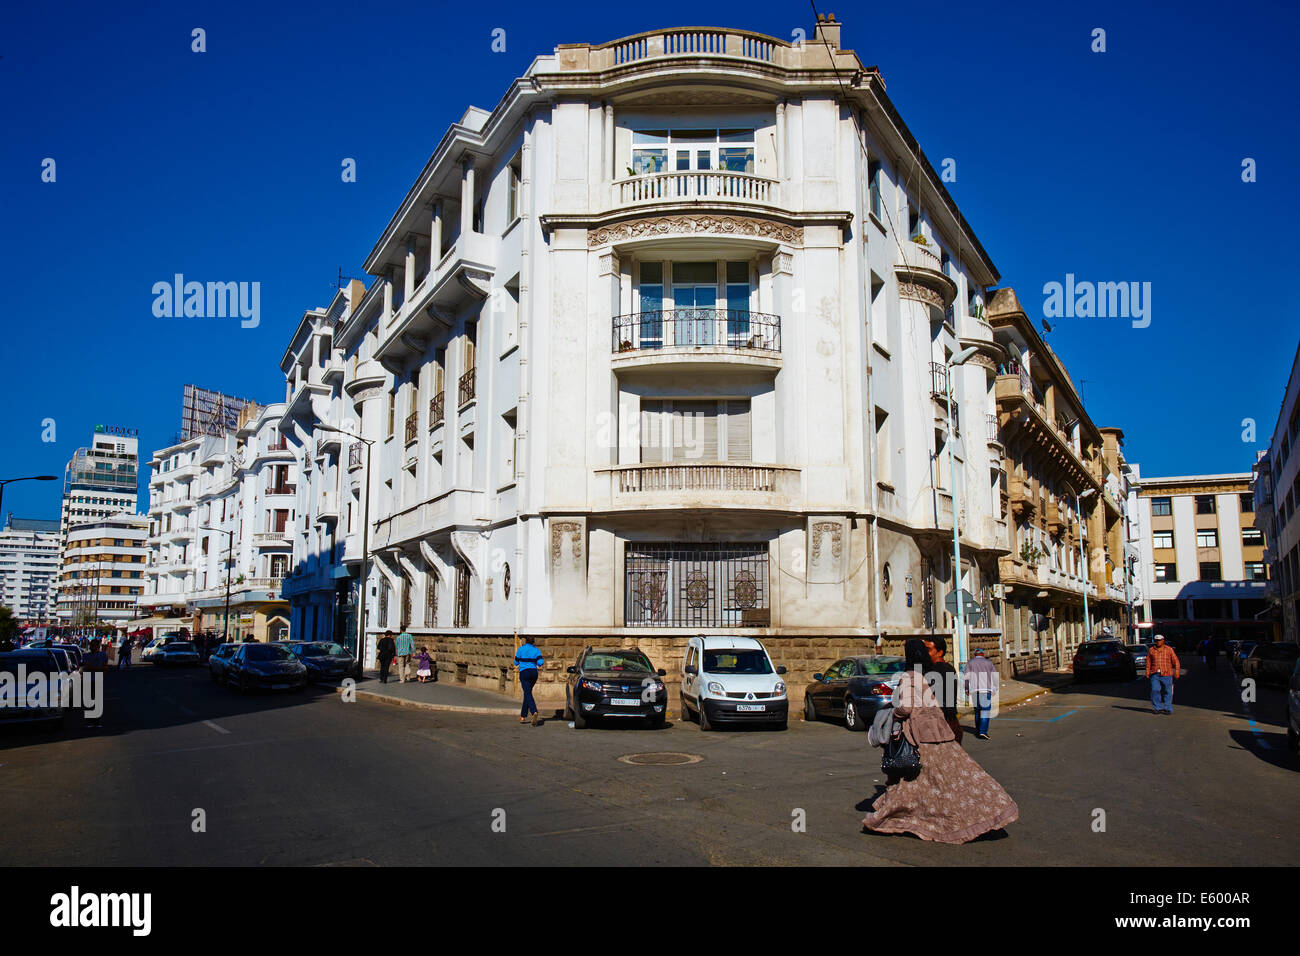 Morocco, Casablanca, Abderrahman Sahraoui street Stock Photo